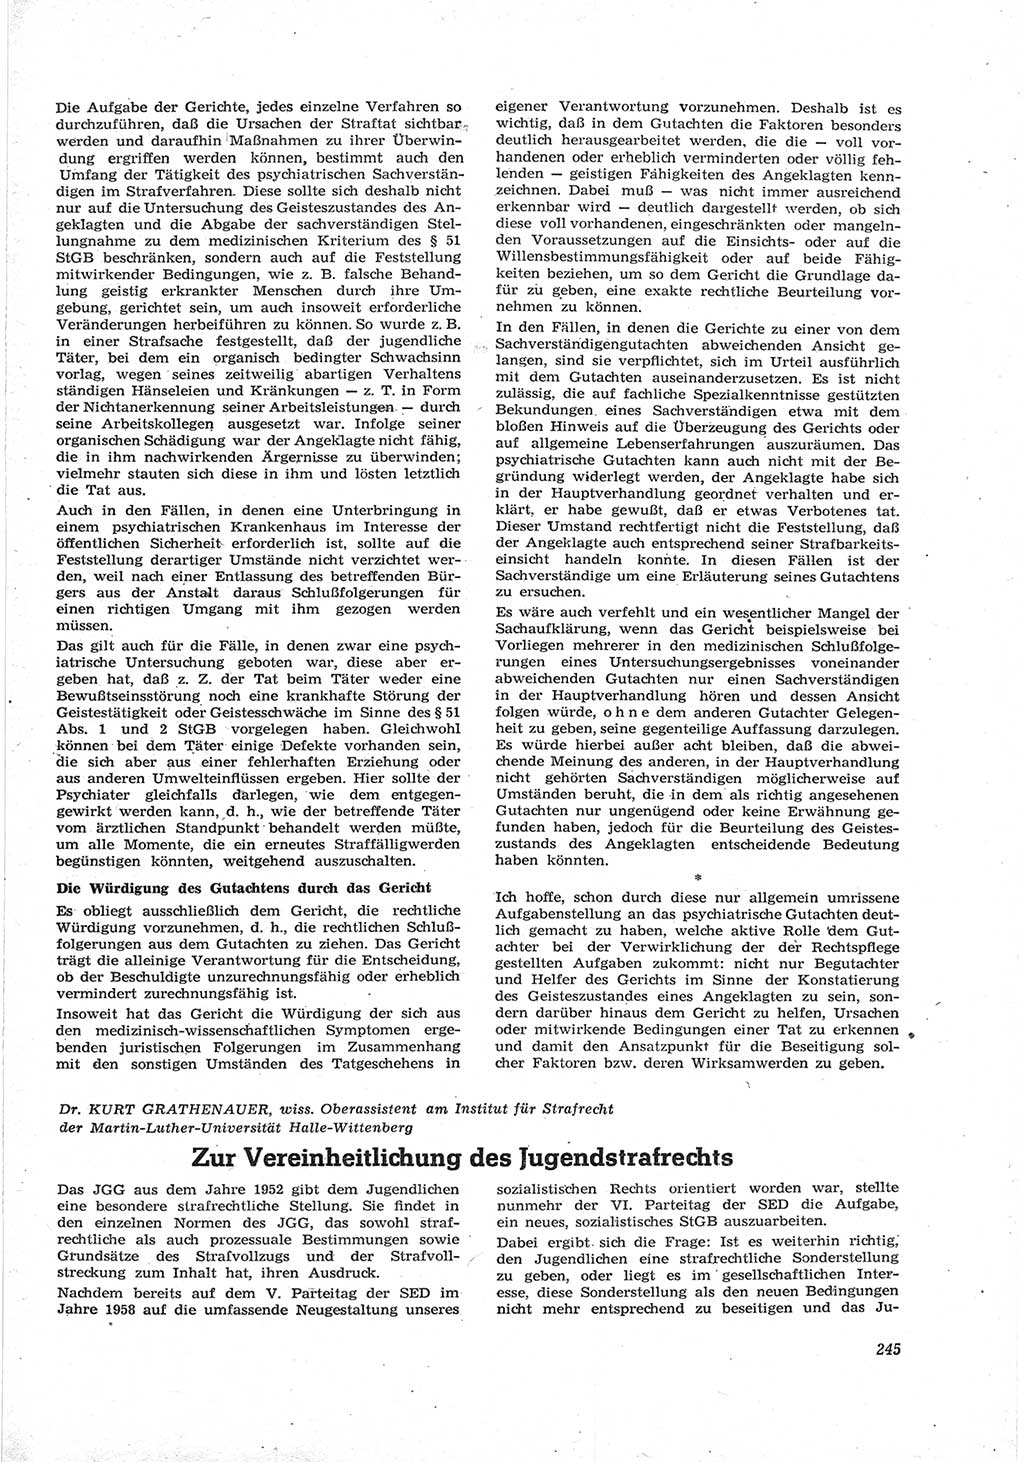 Neue Justiz (NJ), Zeitschrift für Recht und Rechtswissenschaft [Deutsche Demokratische Republik (DDR)], 17. Jahrgang 1963, Seite 245 (NJ DDR 1963, S. 245)